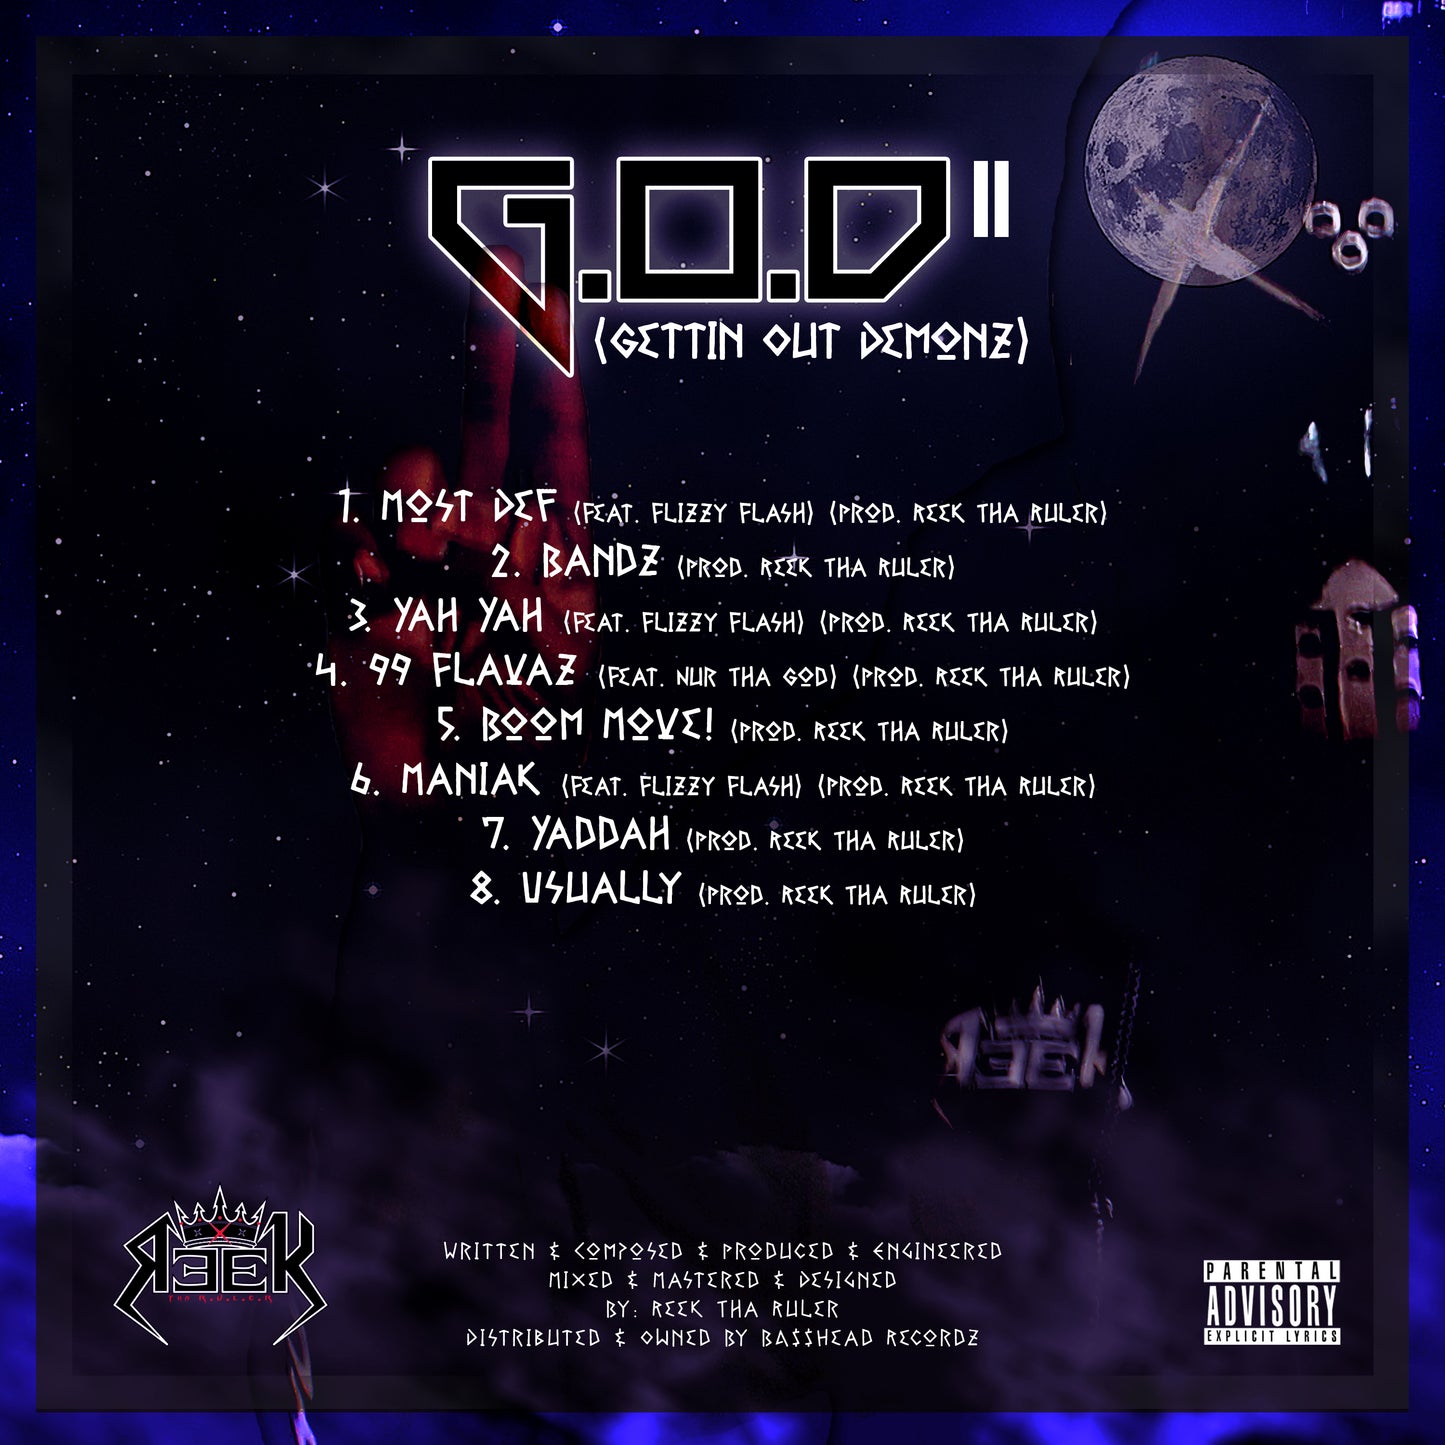 Reek Tha Ruler - G.O.D. Pt. II: (Gettin Out Demonz) (2021)